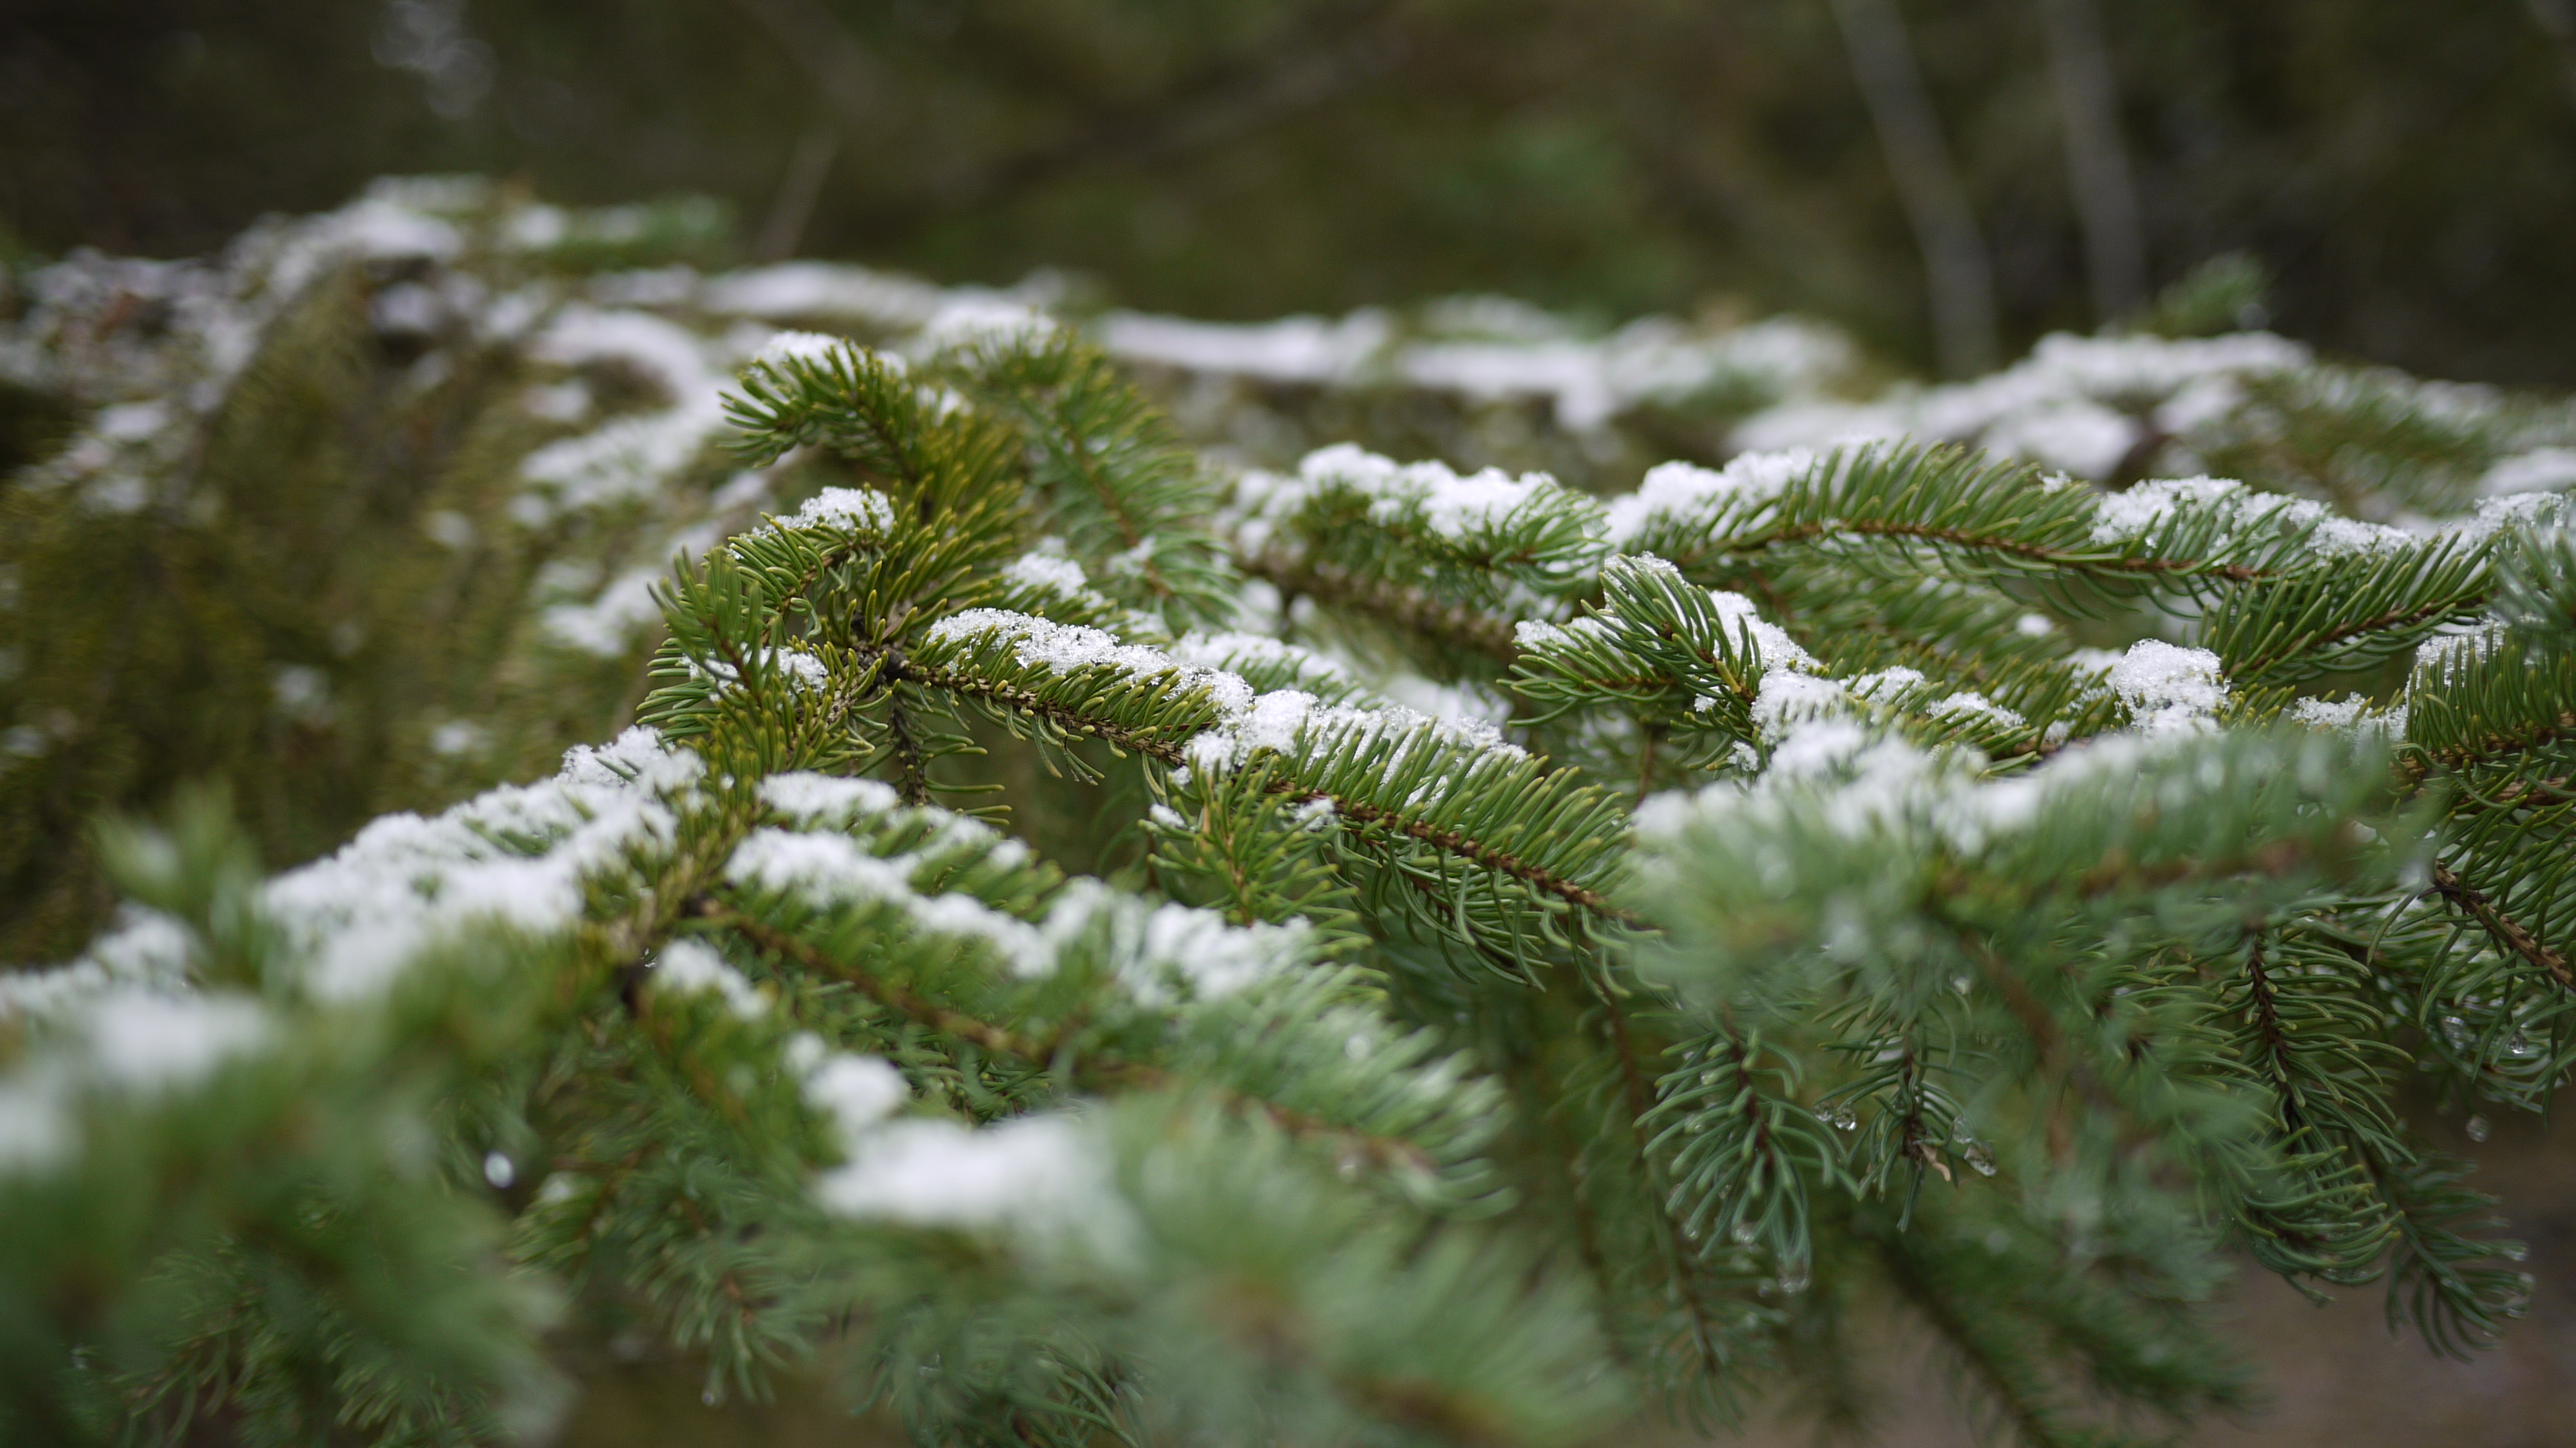 coniferous trees in winter